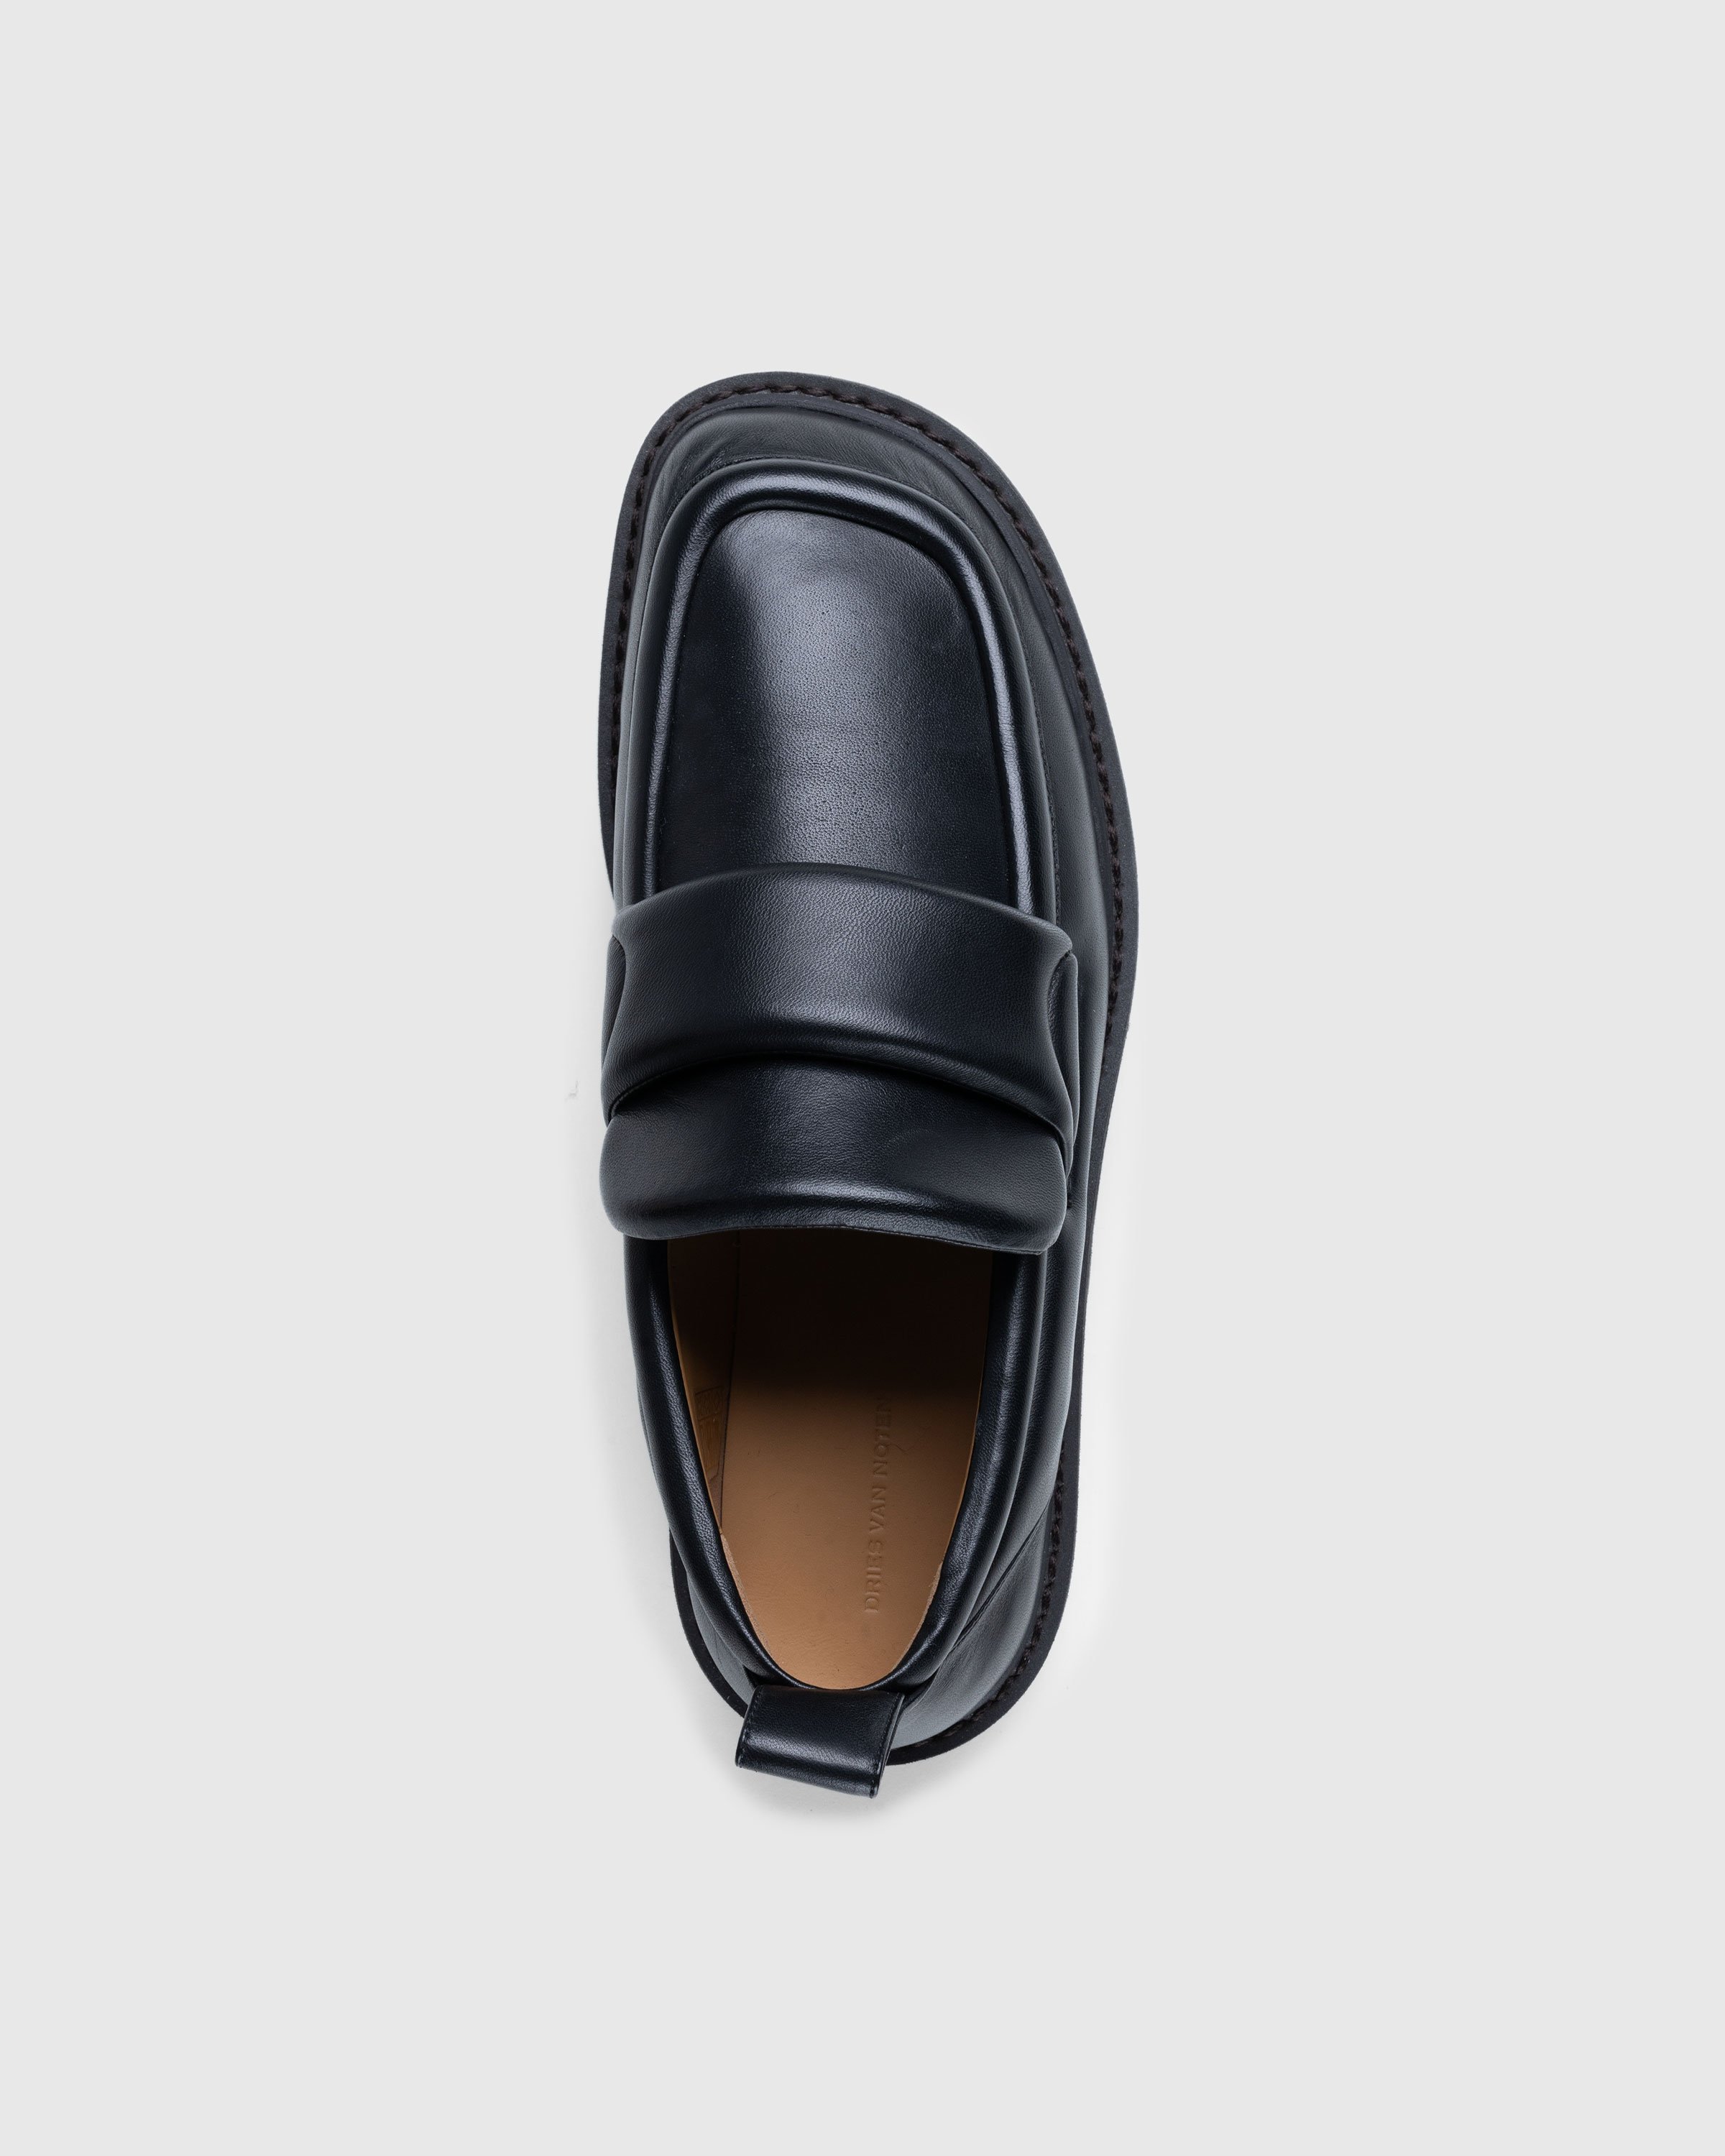 Dries van Noten - Padded Leather Loafers Black - Footwear - Black - Image 4